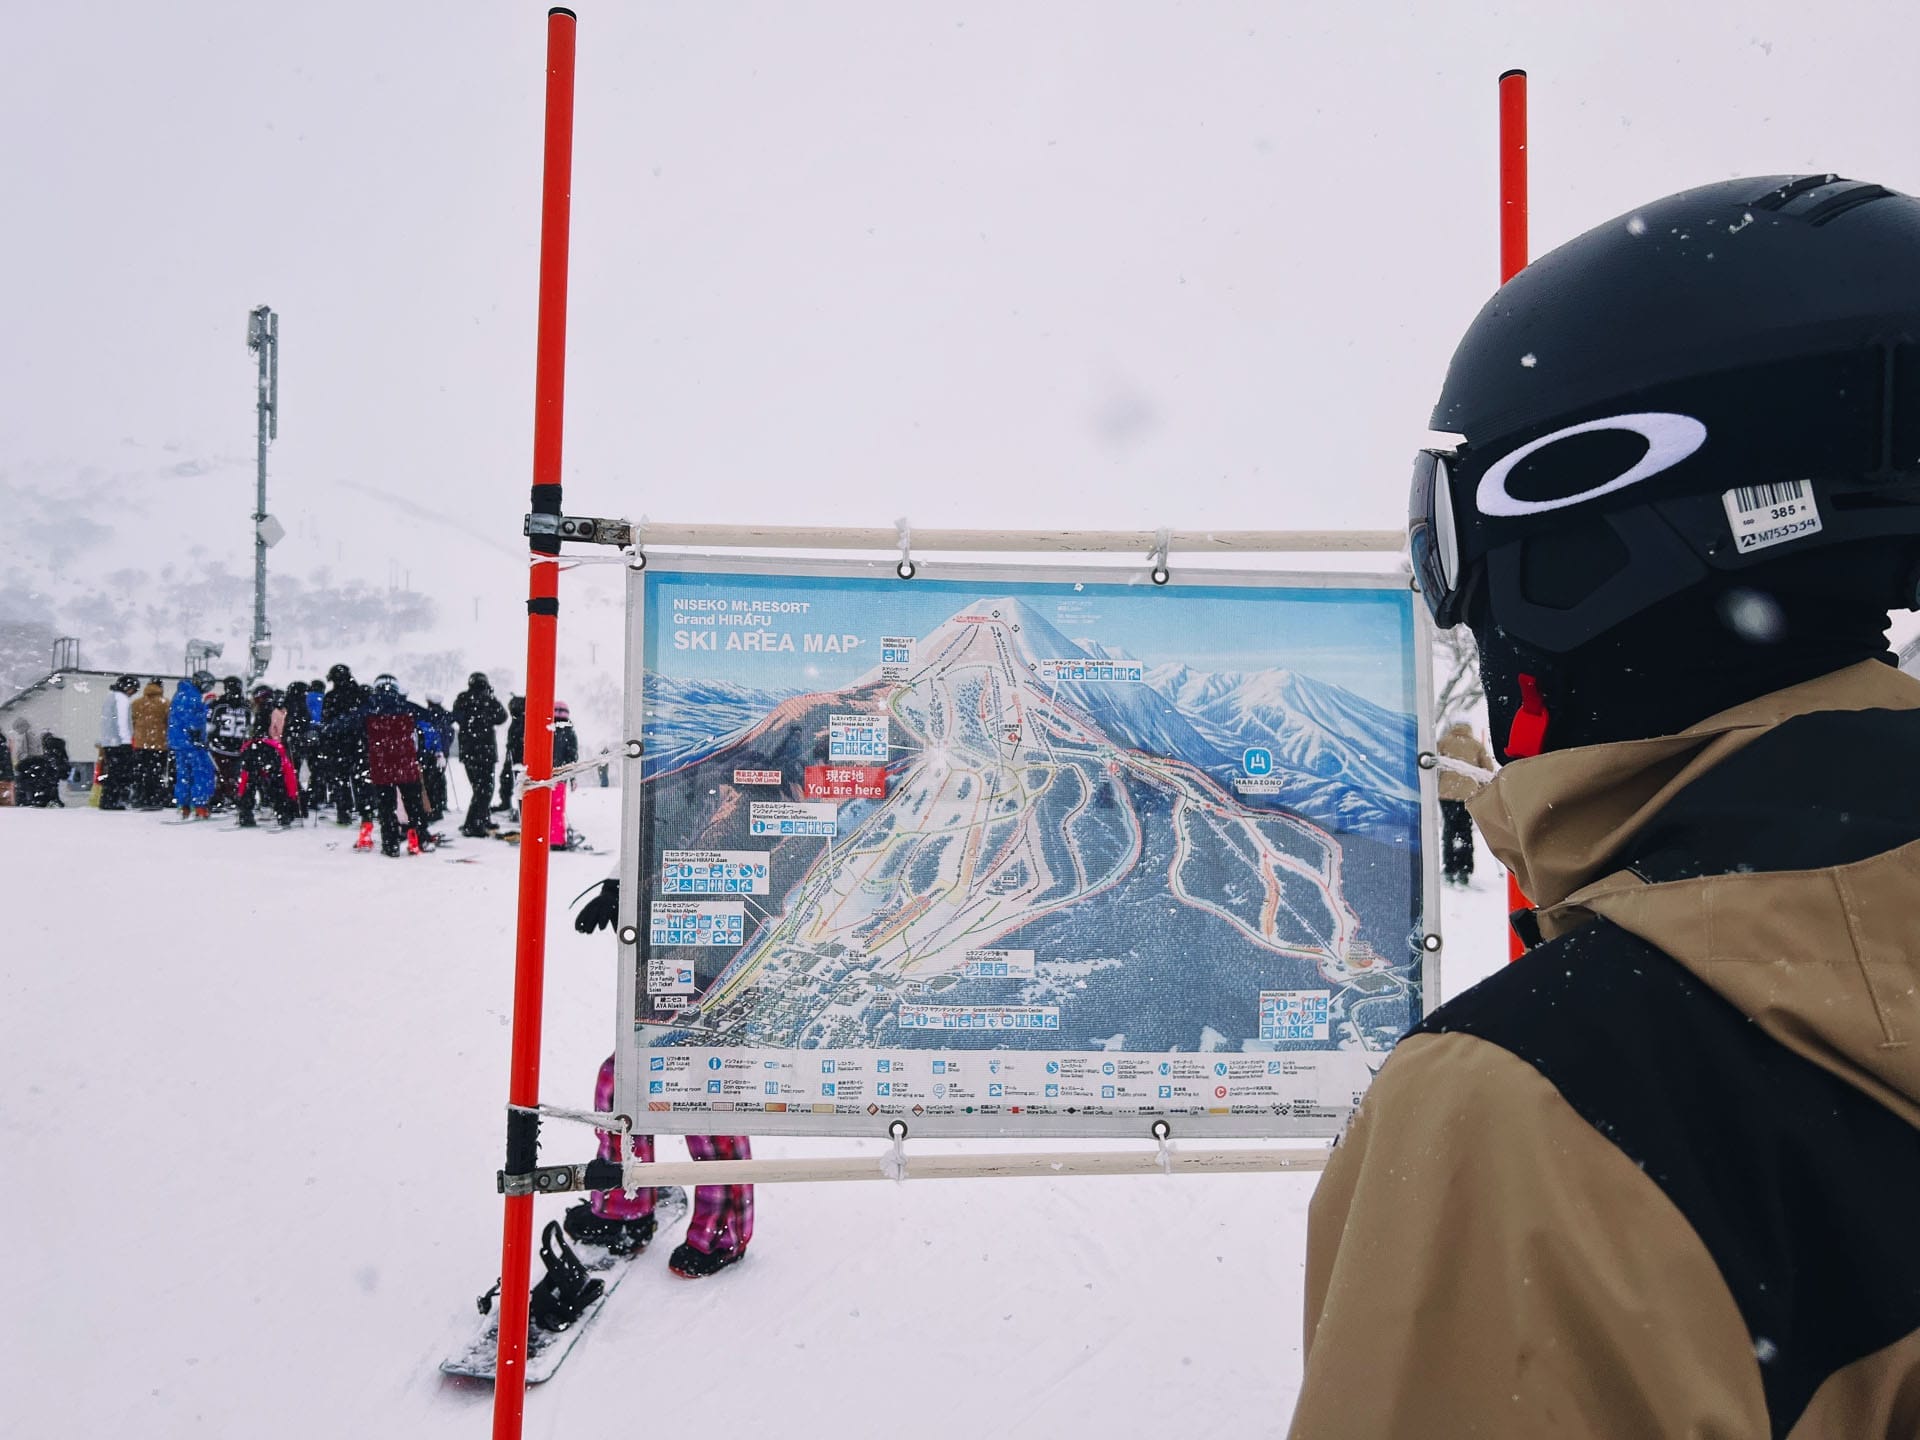 Skiing in Japan: Why Niseko Is Best For Beginners, Photo by Ally Burnie, skiing, japan, niseko, skiing guide, skiier standing in front of the outdoor niseko ski map